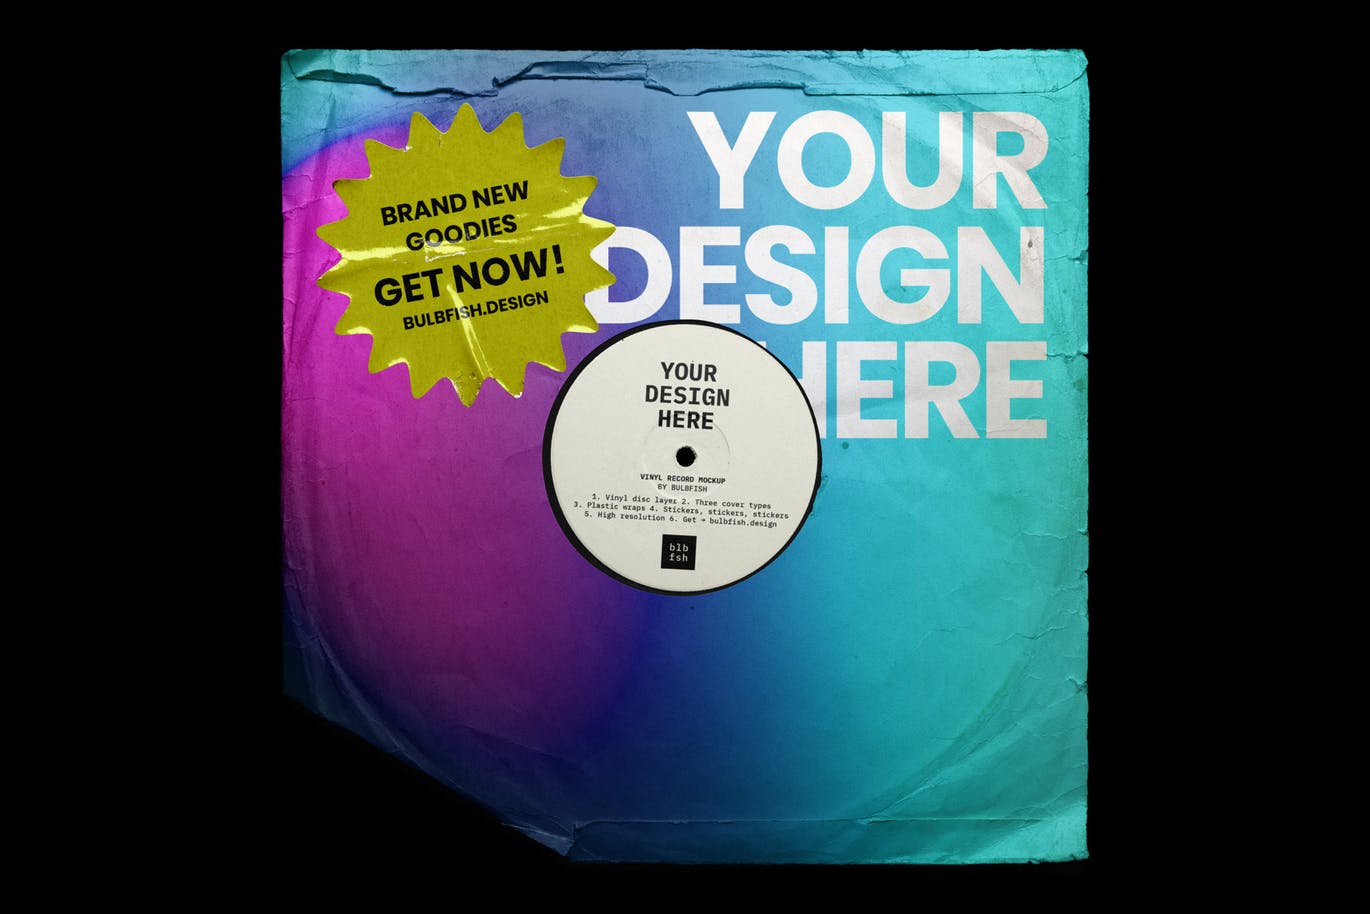 乙烯基唱片包装盒及封面设计图第一素材精选模板 Vinyl Record Mockup插图(6)